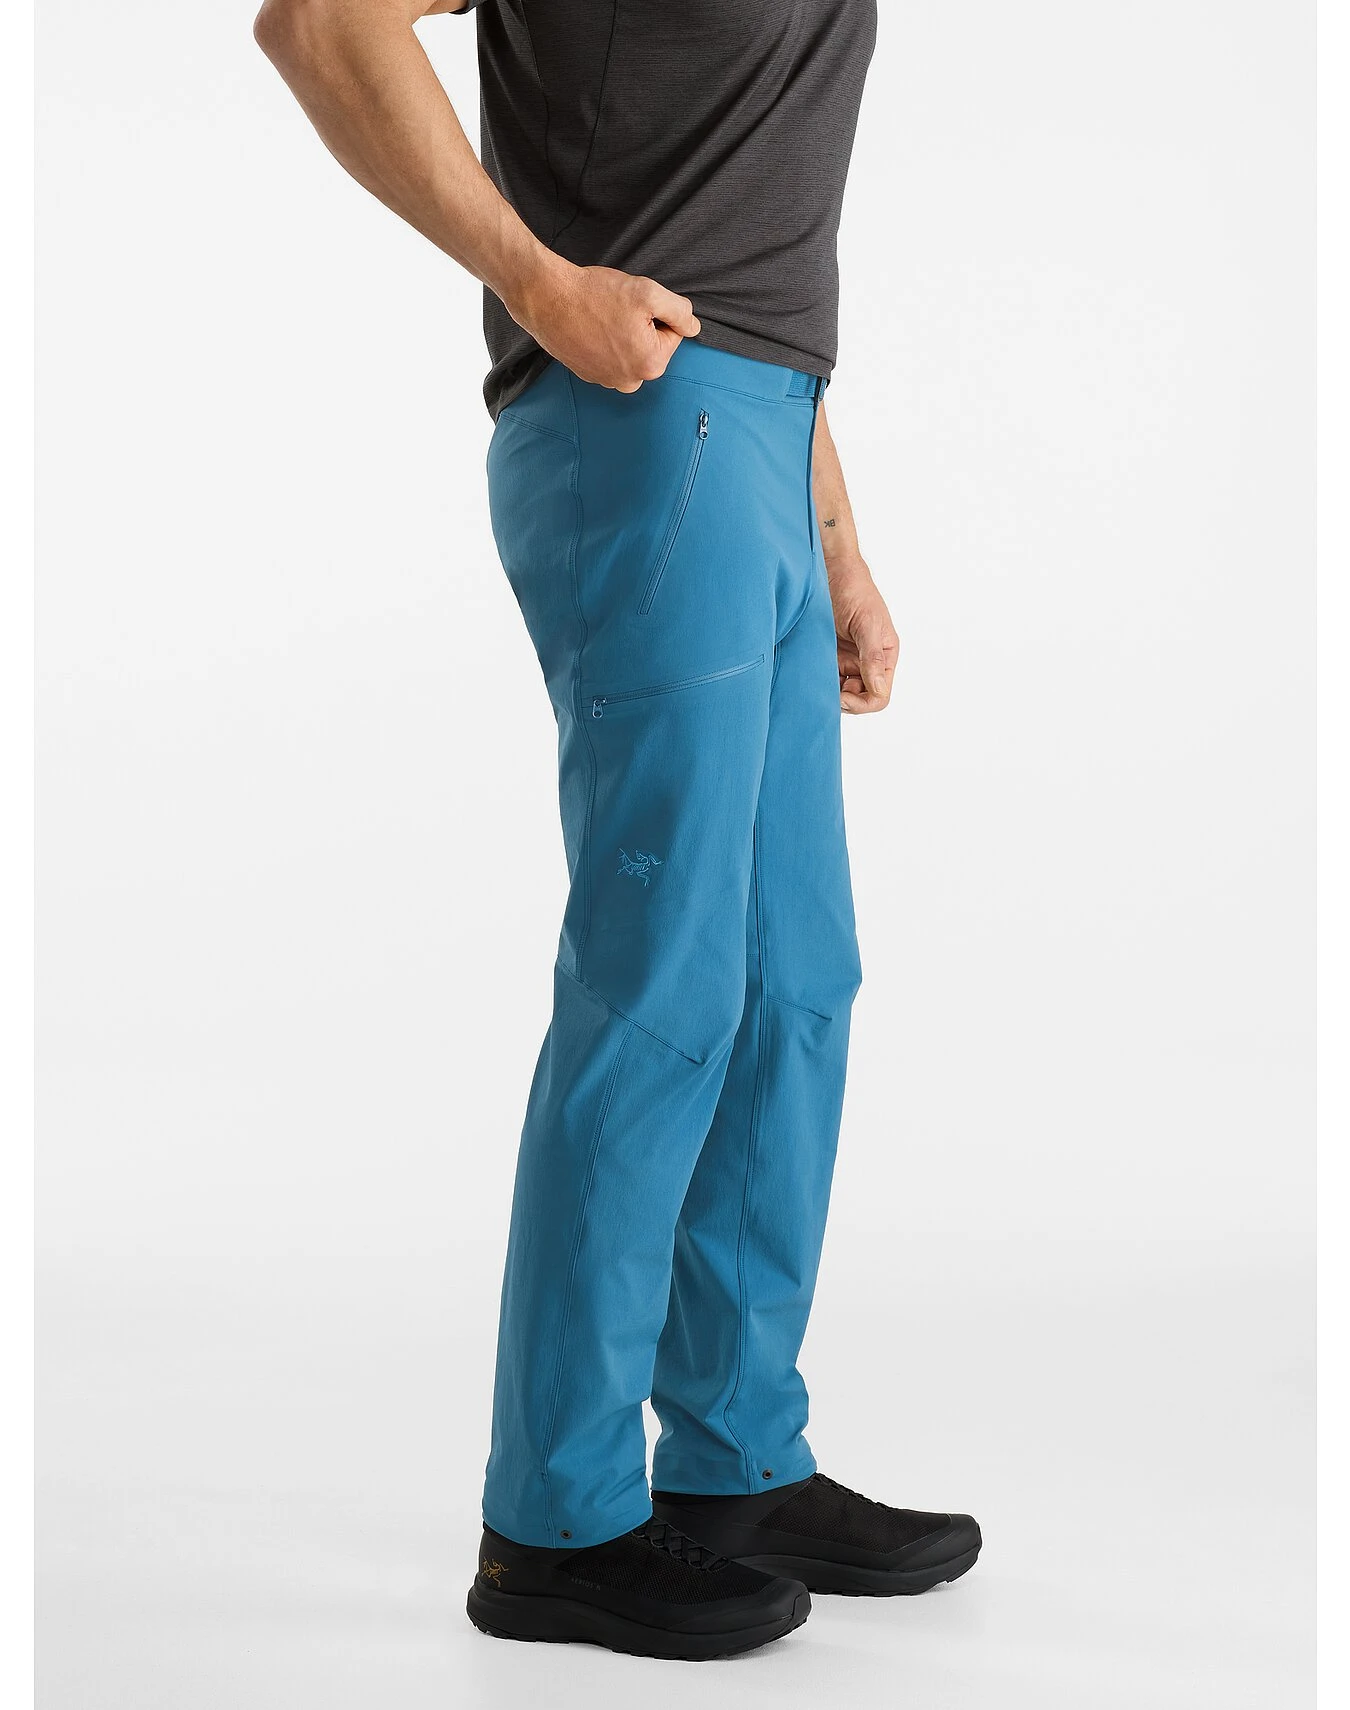 男士Gamma长裤 | Gamma Pant  商品